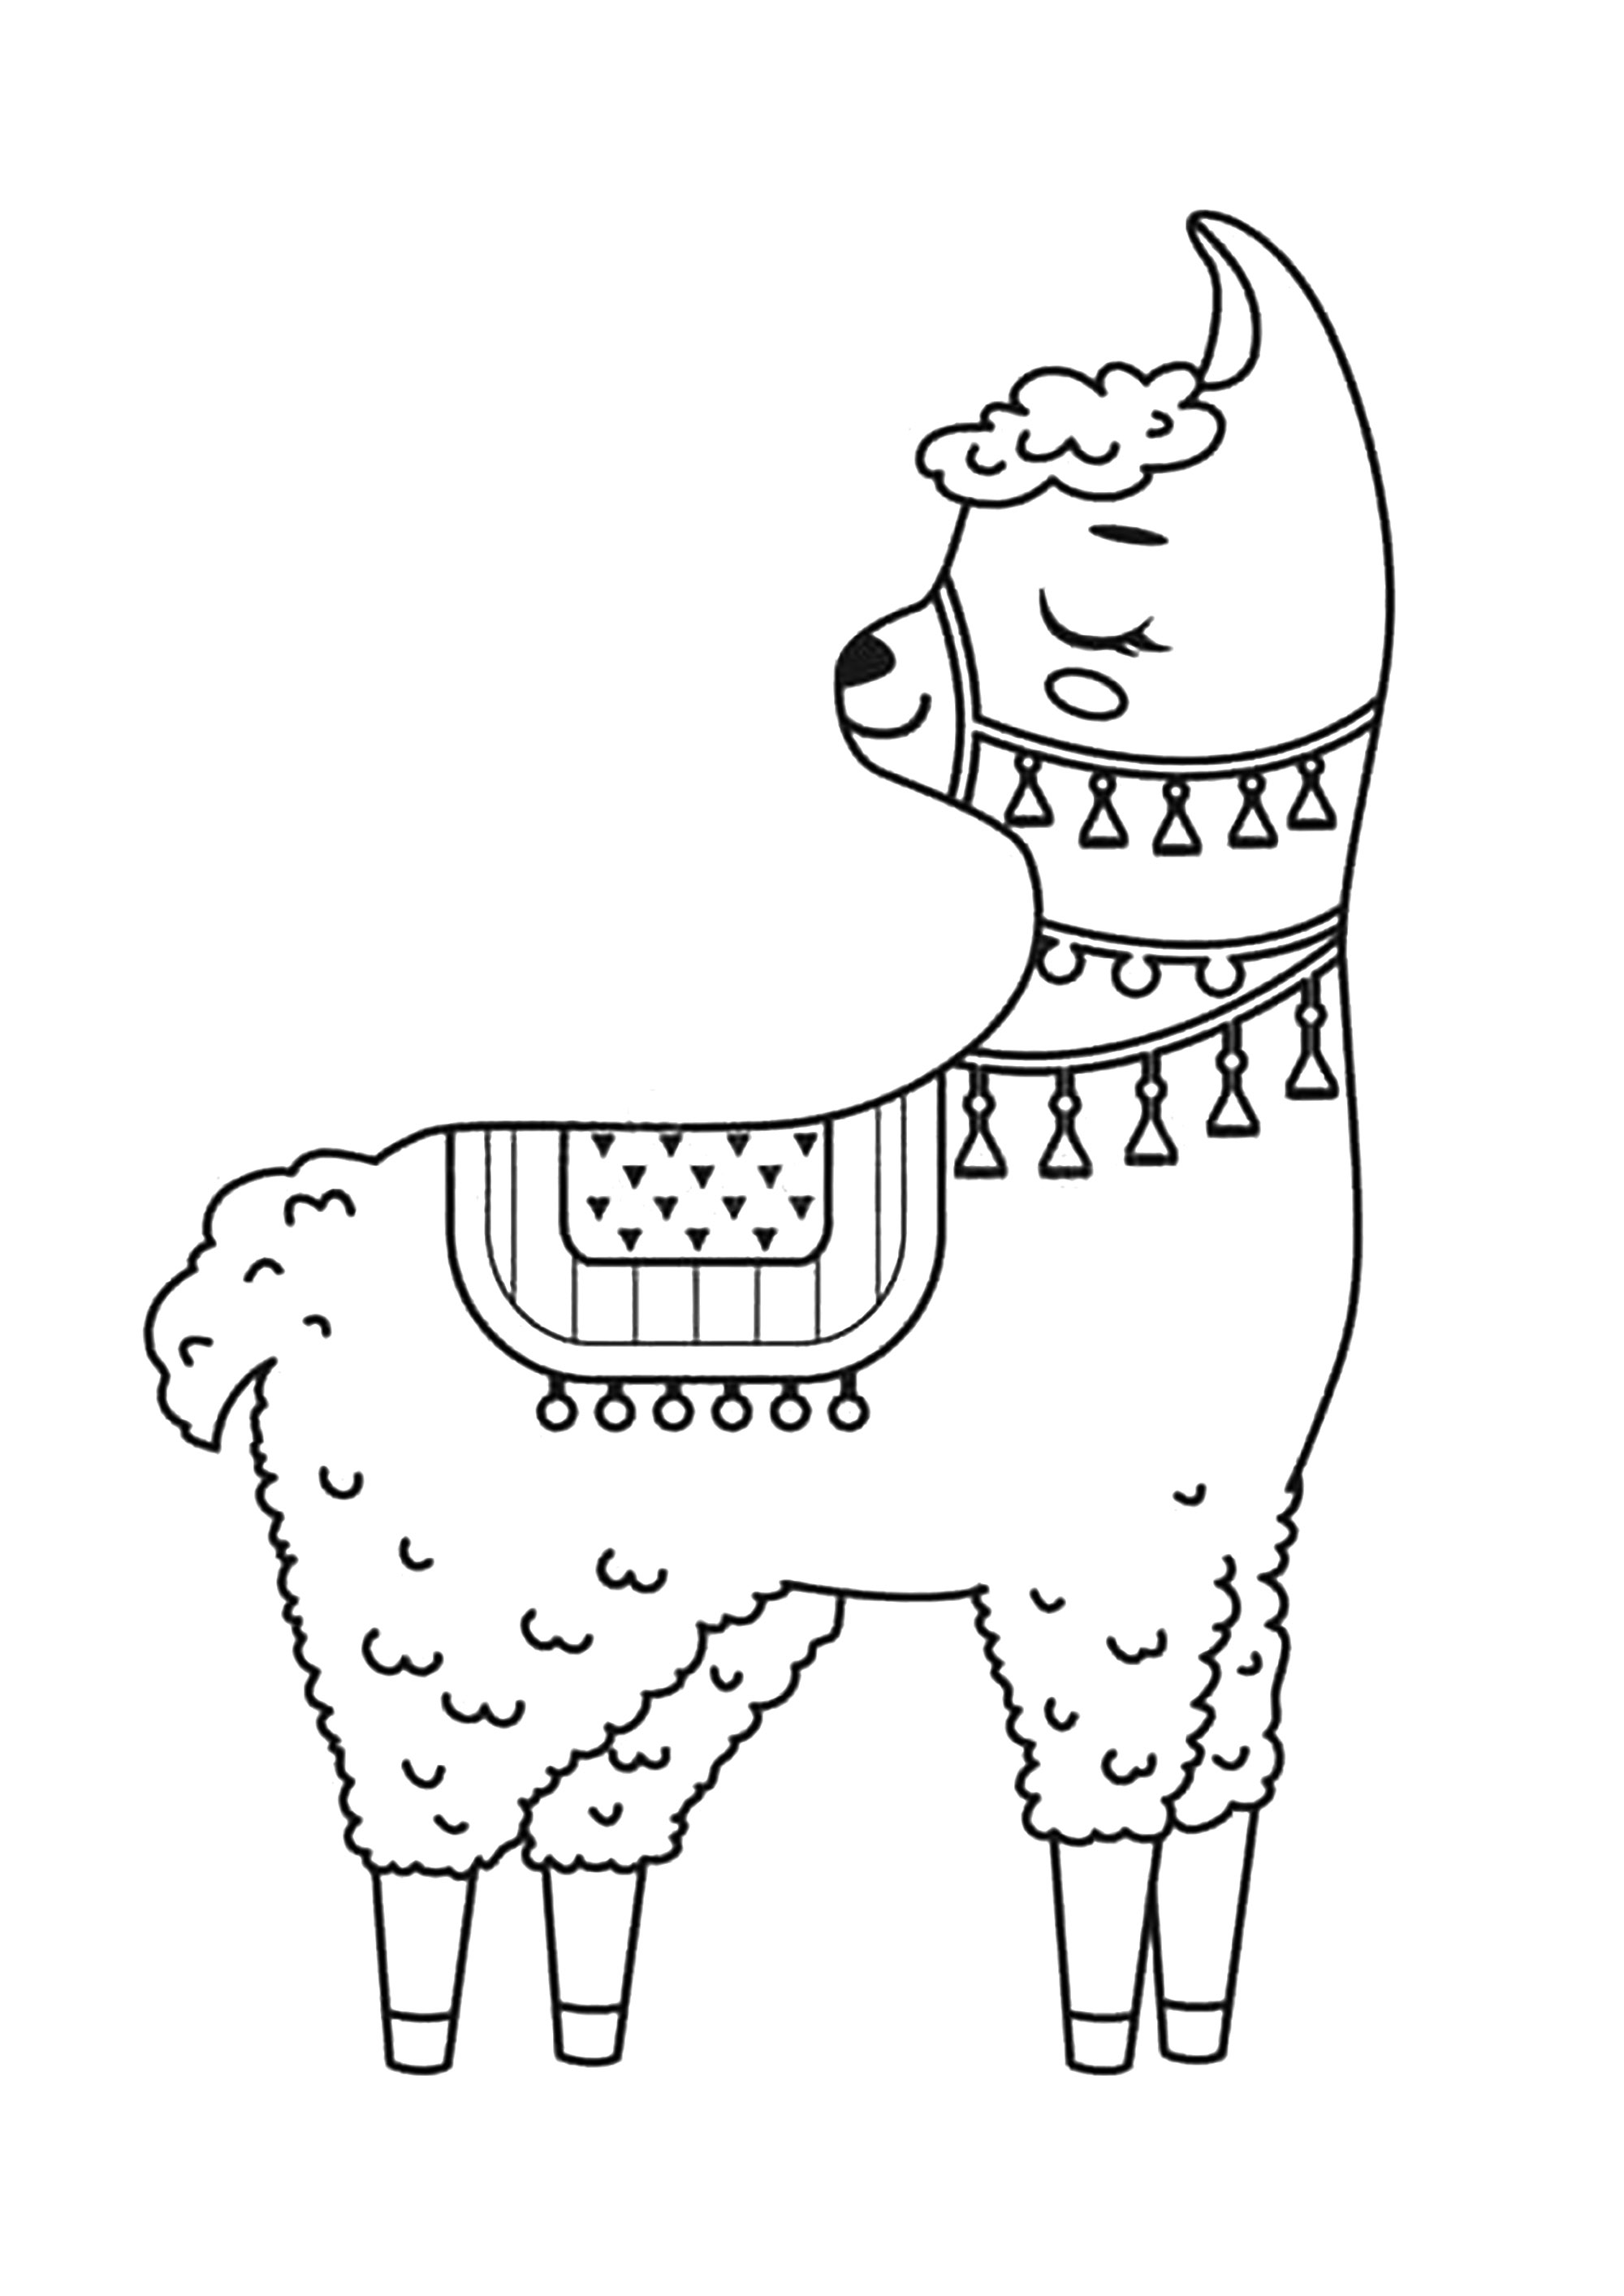 Simple Dibujos para colorear para niños gratis de Llamas